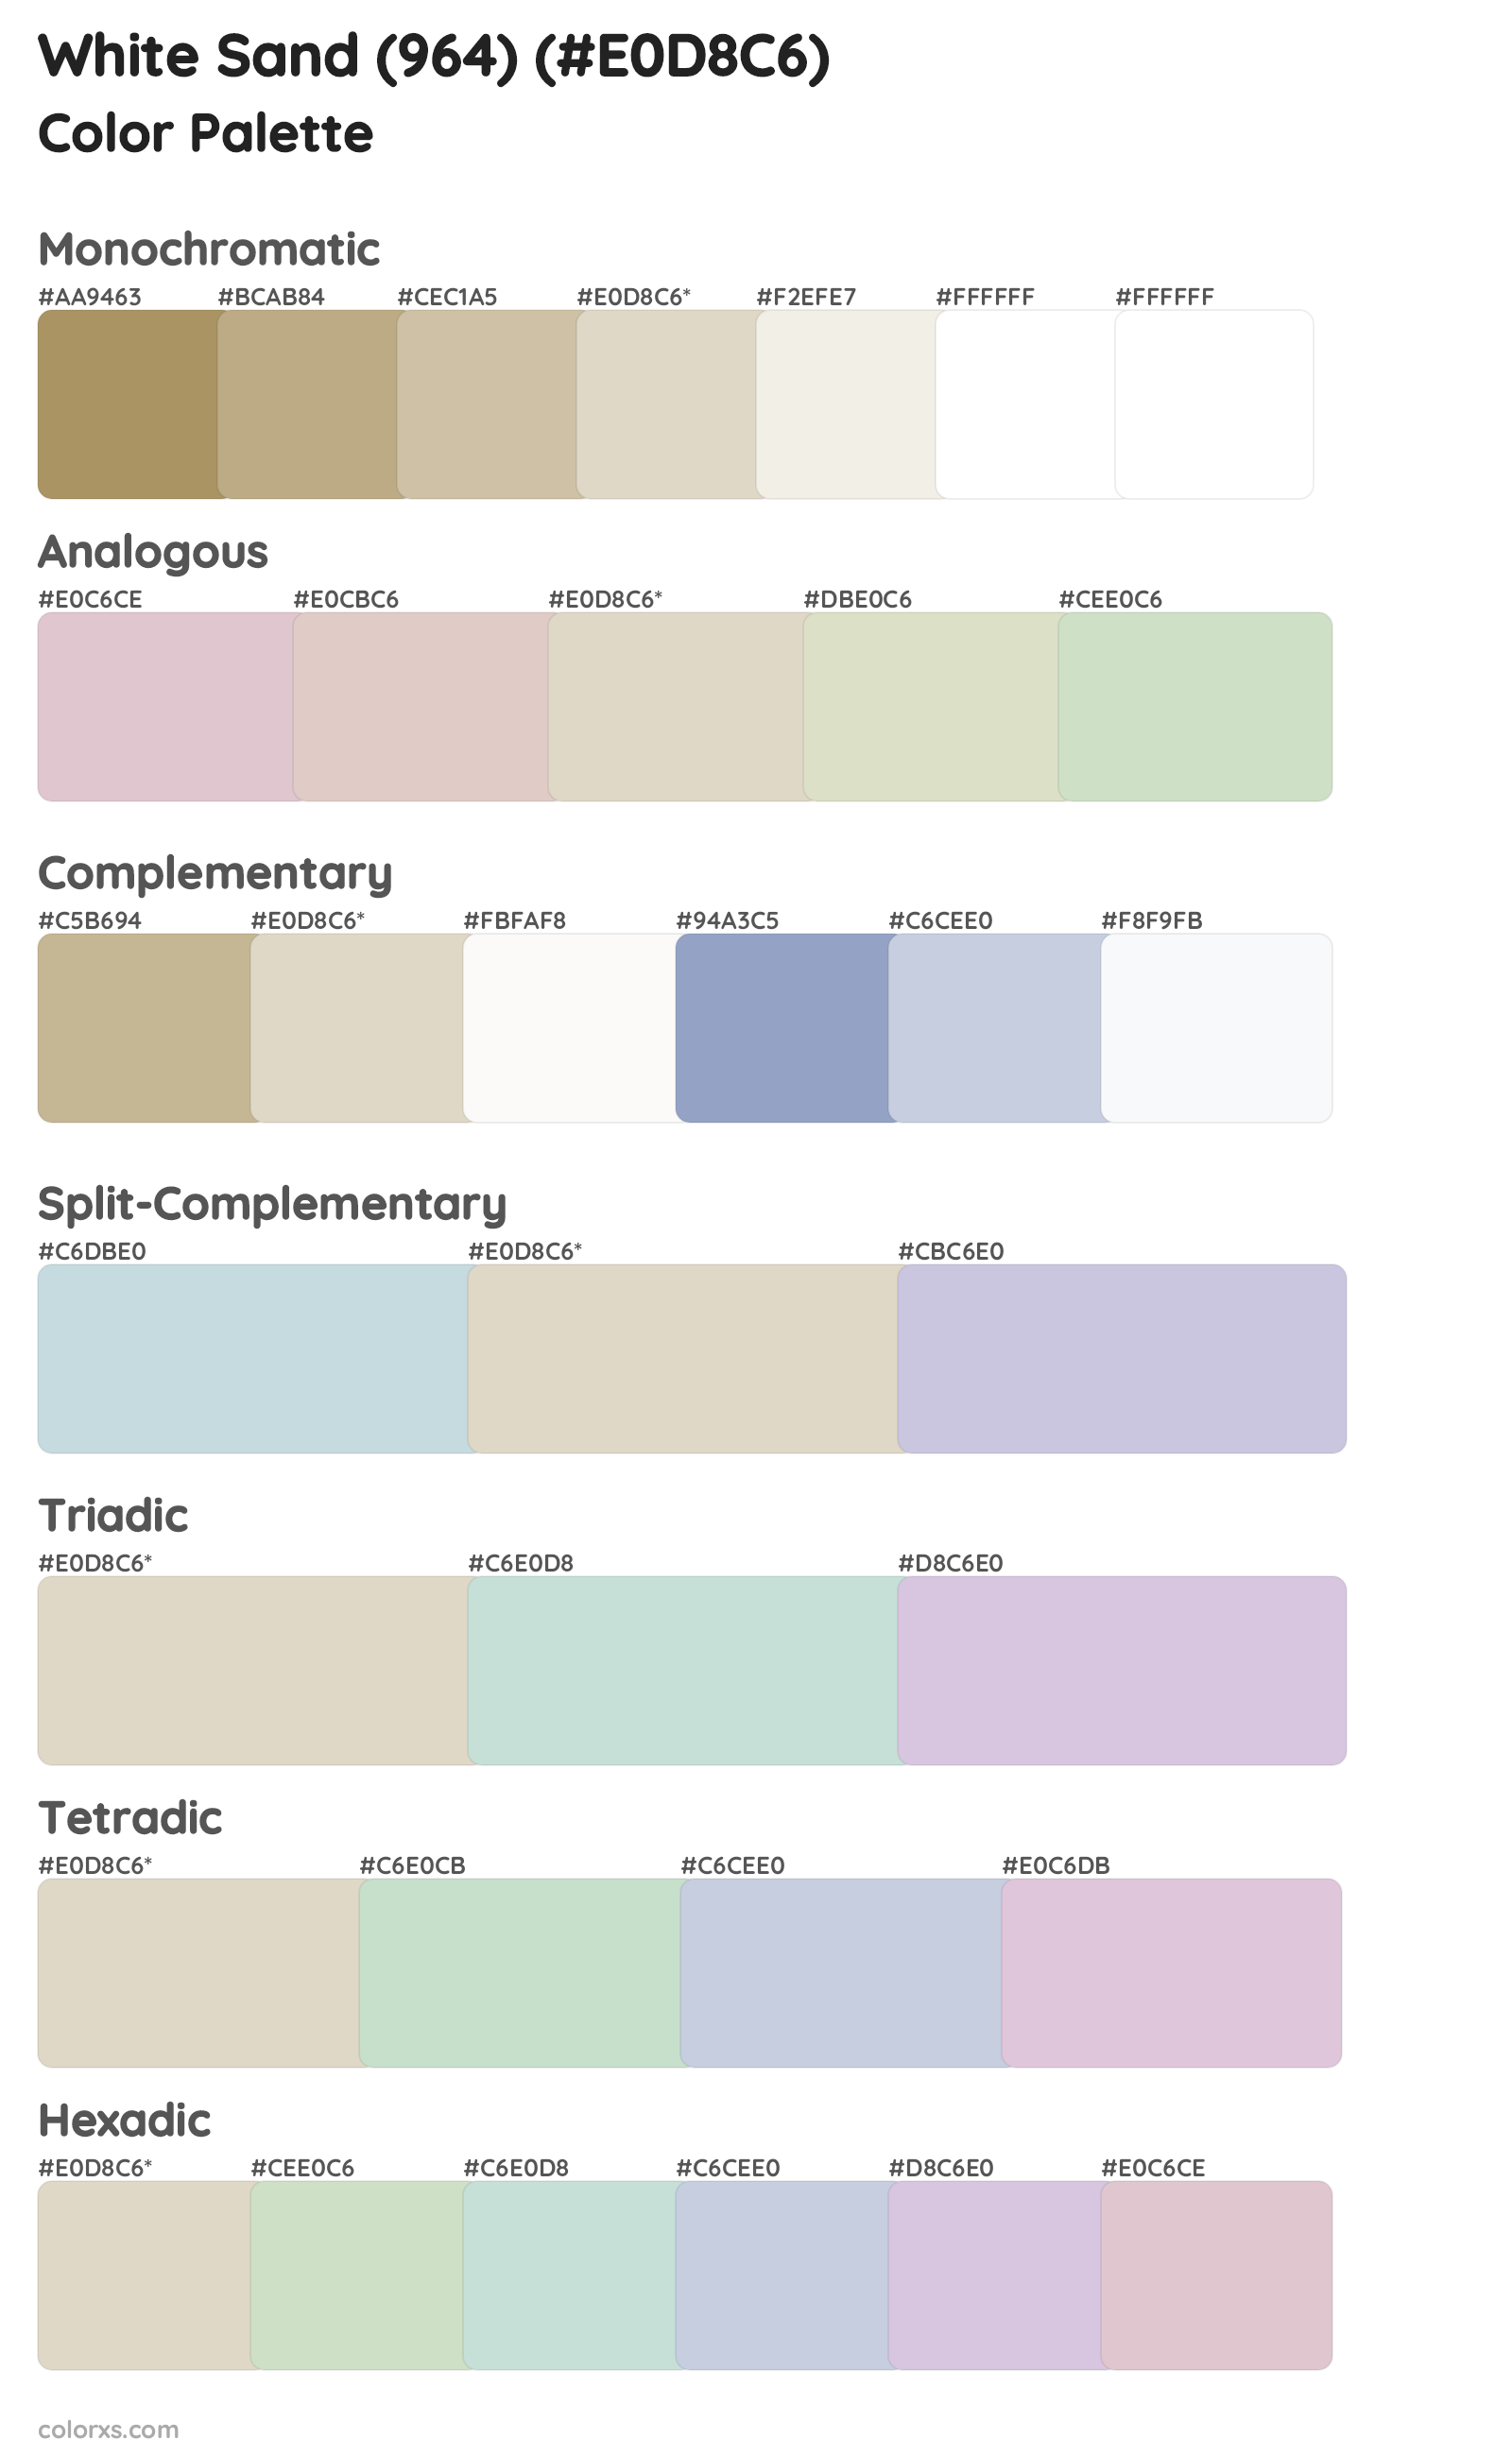 White Sand (964) Color Scheme Palettes